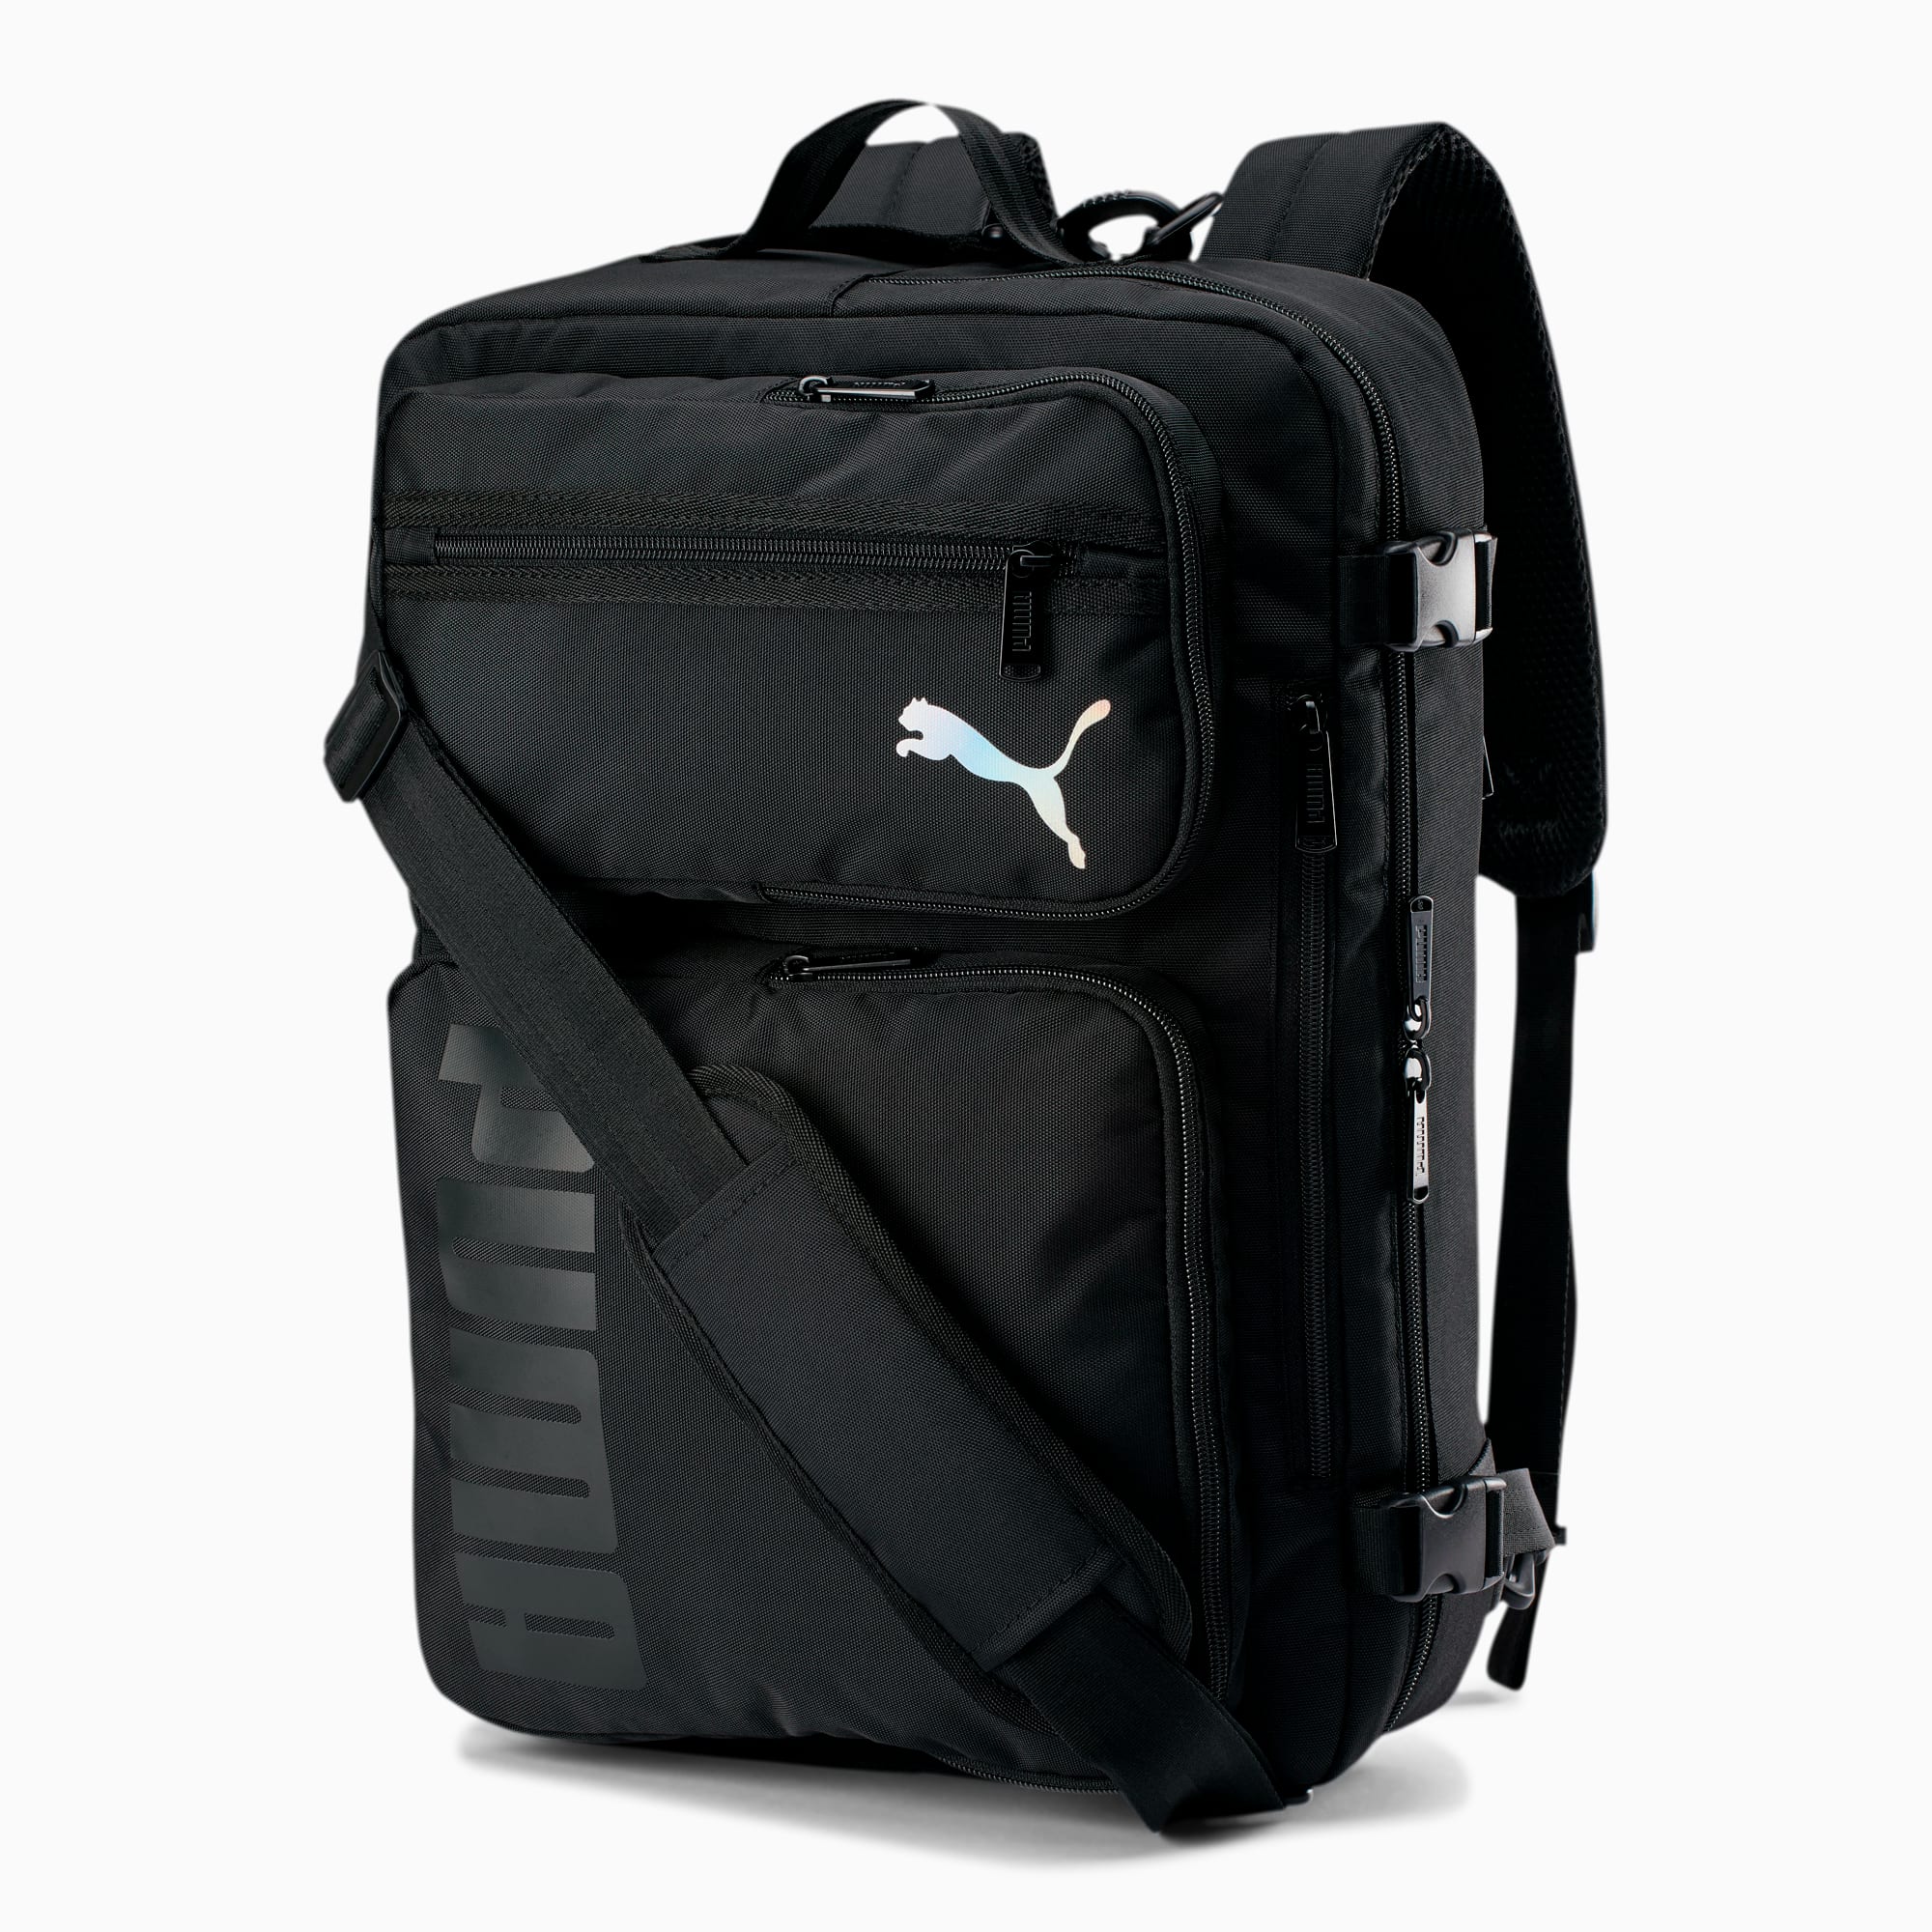 PUMA Journey Backpack/ Messenger Bag 